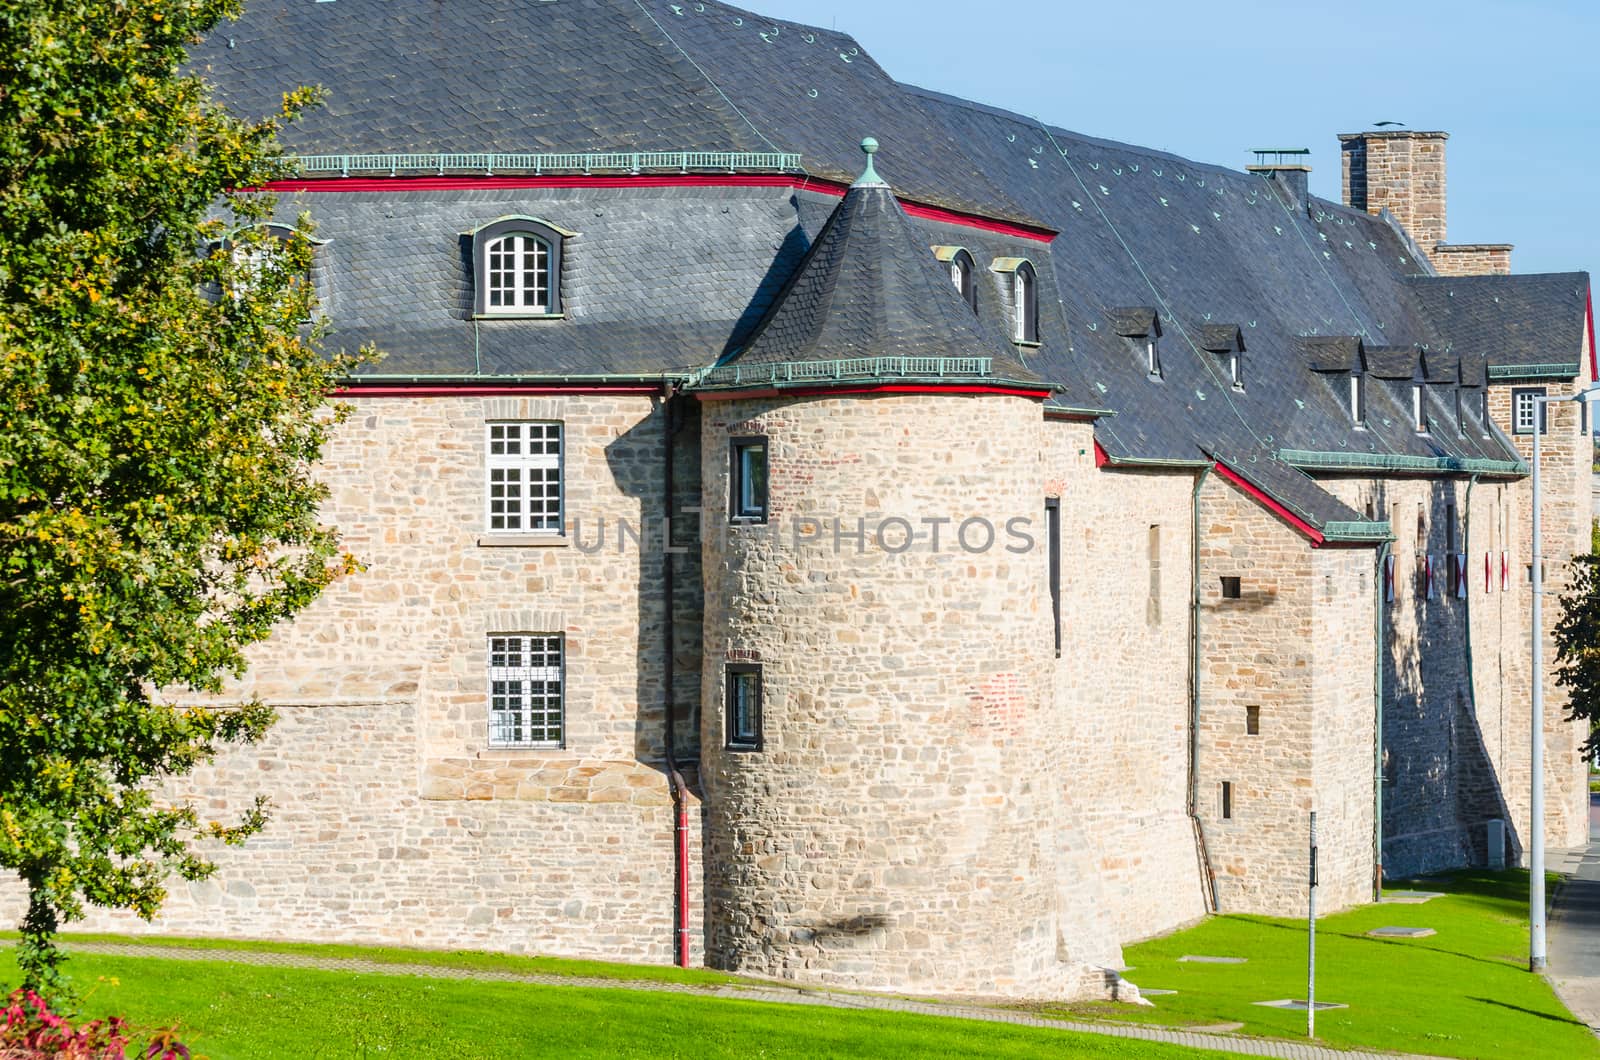 Medieval Castle Broich in Mülheim an der Ruhr. Well restored.